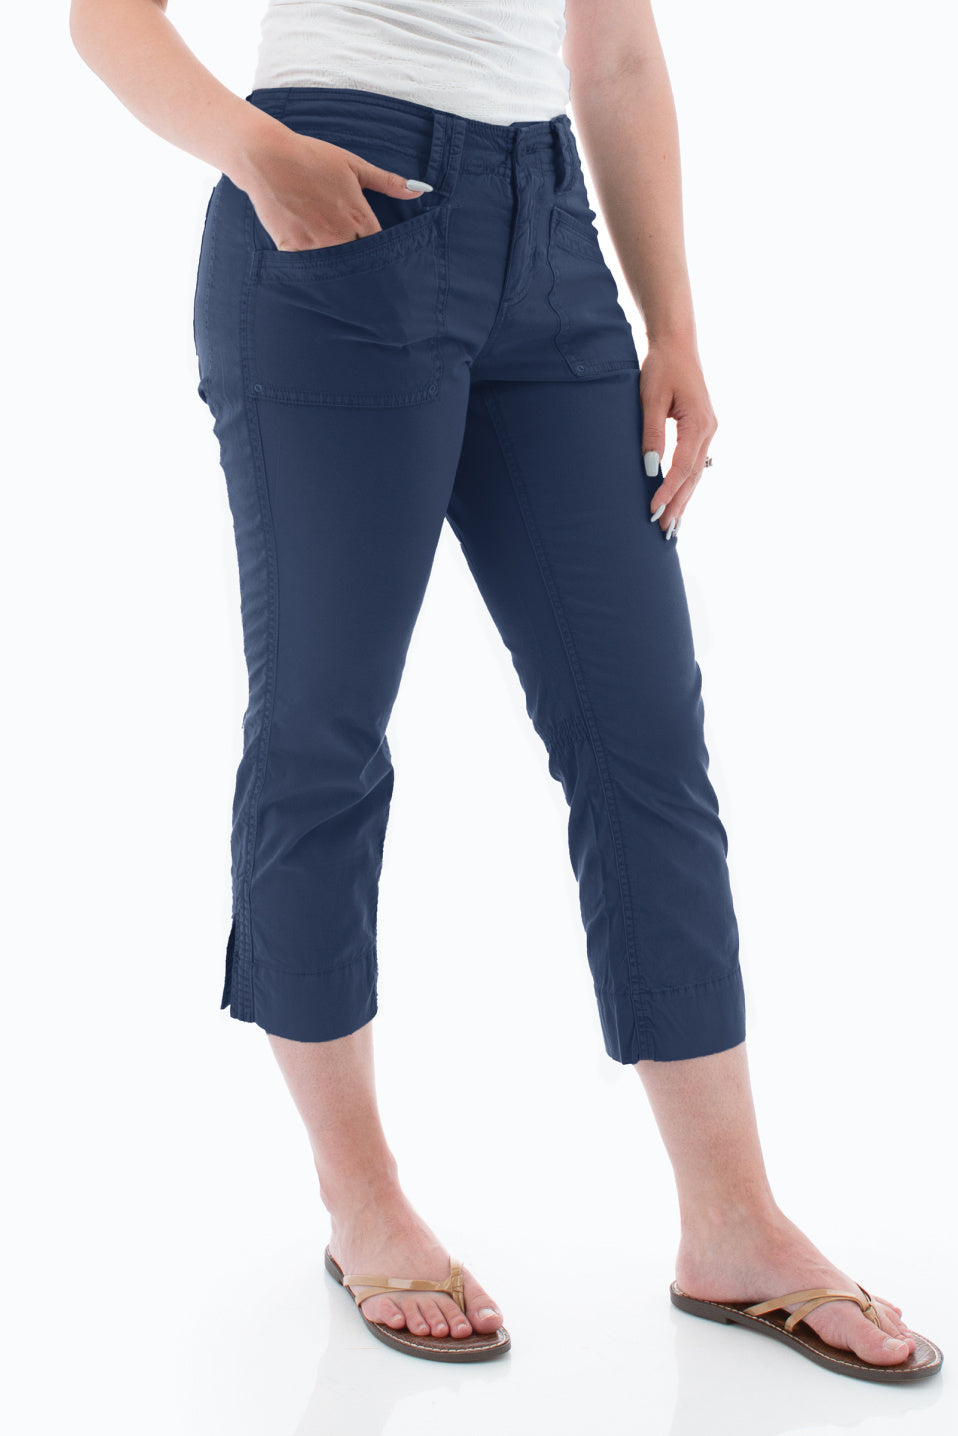 Torrid Cropped Jeggings Capri Jeans Size 14 Seafoam Blue Mint Green Pastel